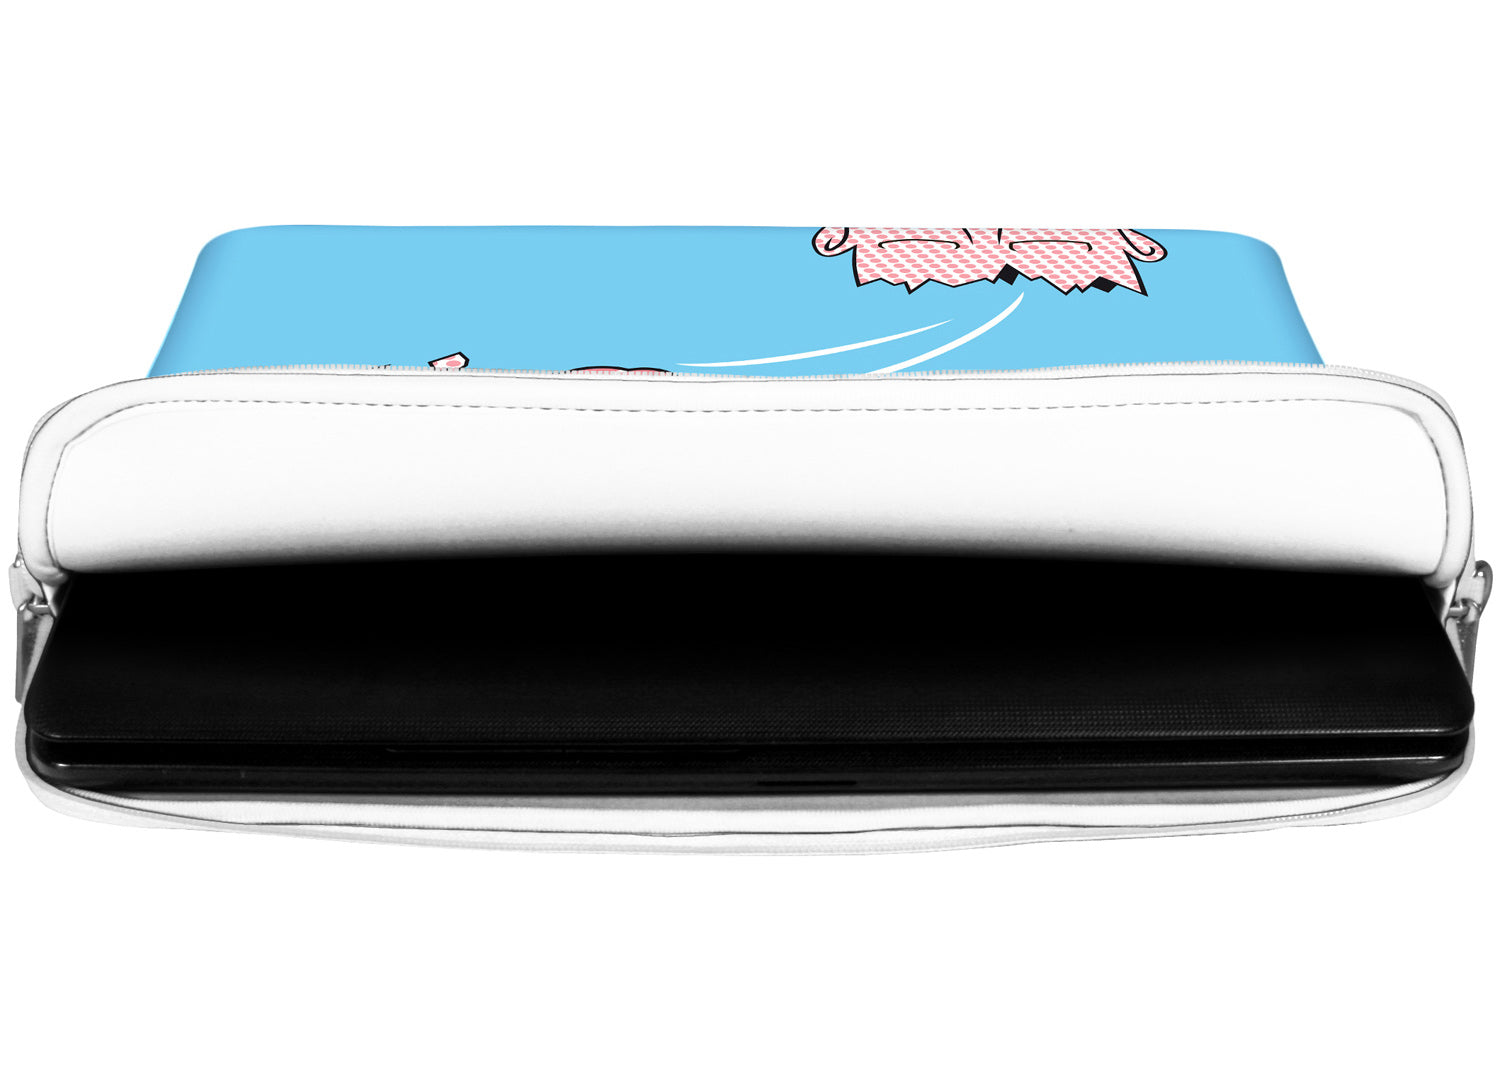 Innenansicht mit Schutzlippen der LS169 Timeout Designer Laptop Tasche in weiß aus wasserabweisendem Neopren